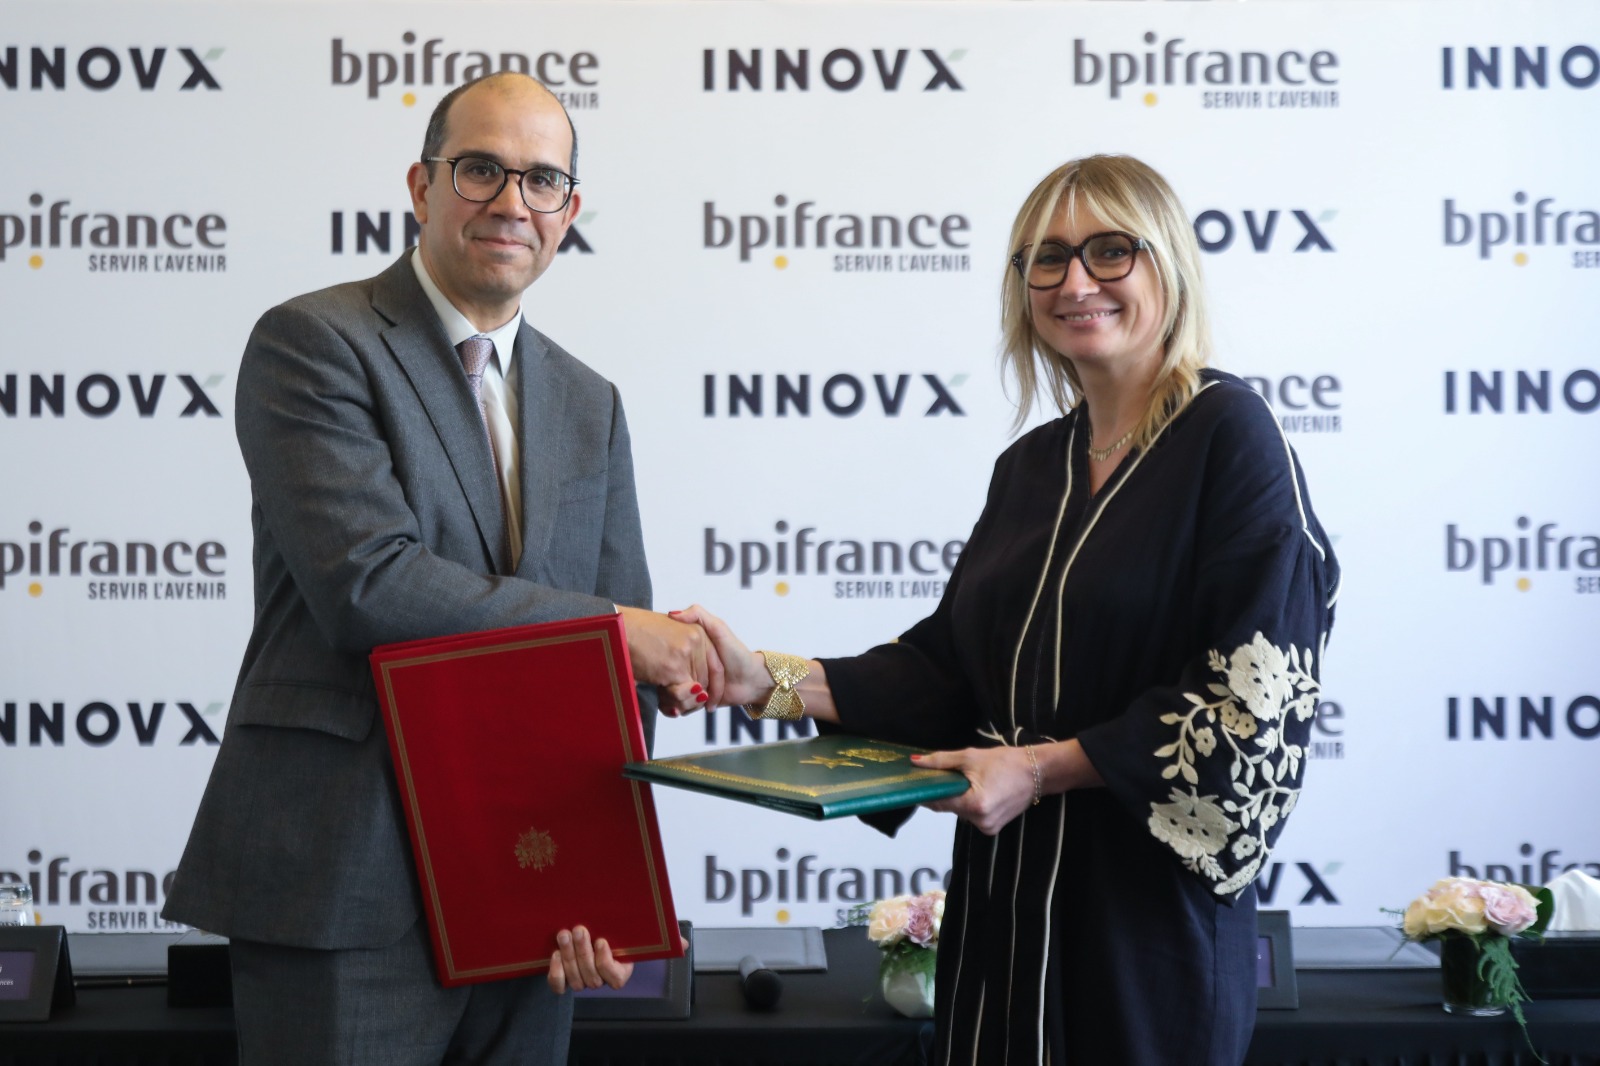 Bpifrance et INNOVX signent un partenariat dans plusieurs filières stratégiques